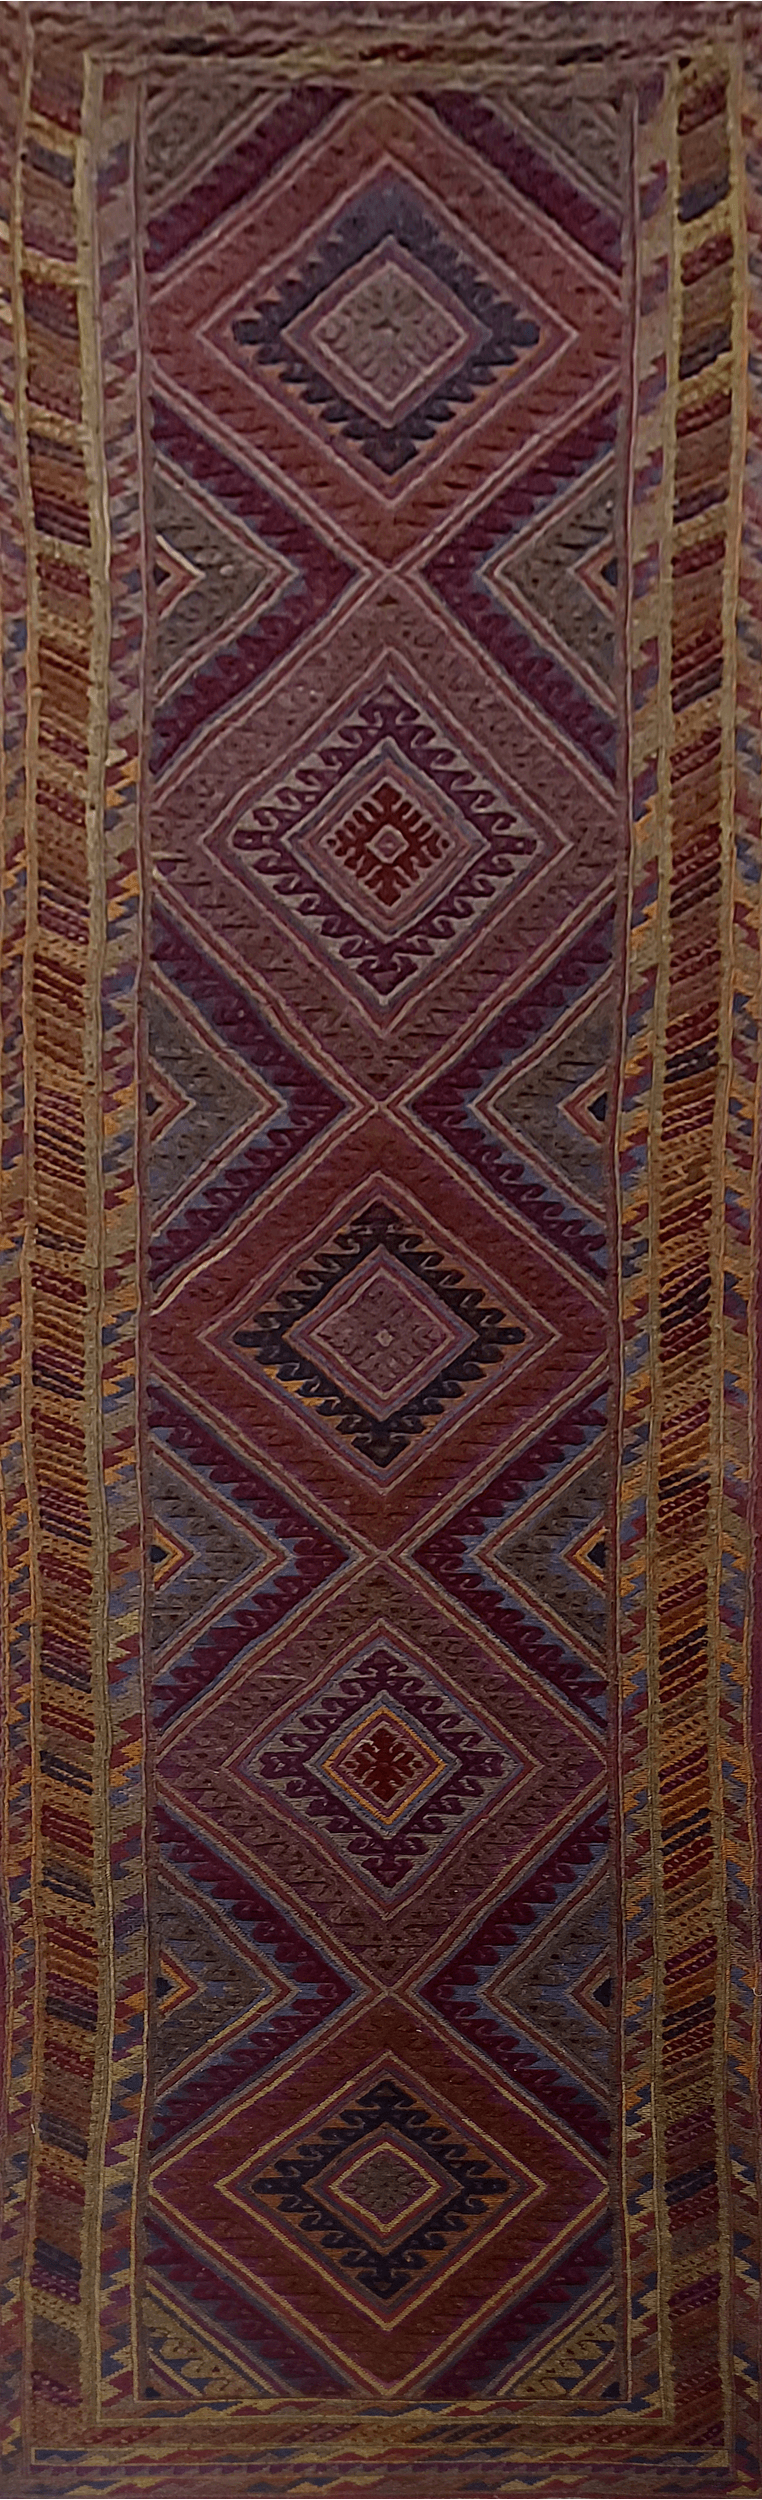 Mashwani Kilim Rug  - 379 cm x 81 cm